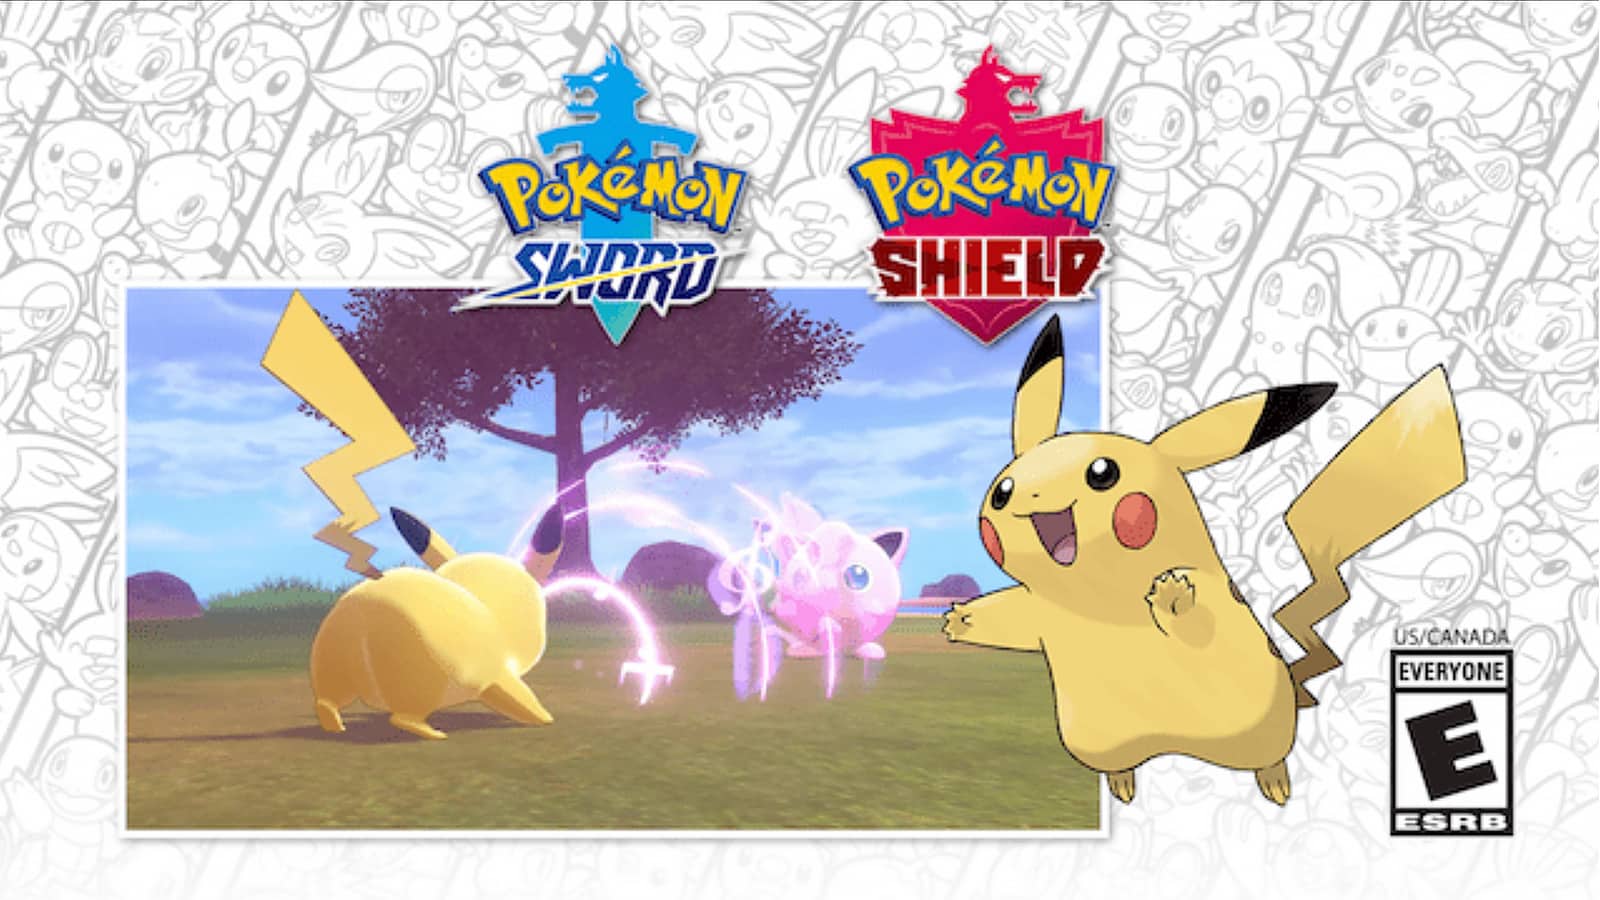 Pokémon Spada e Scudo, il codice per avere Pikachu con Canto